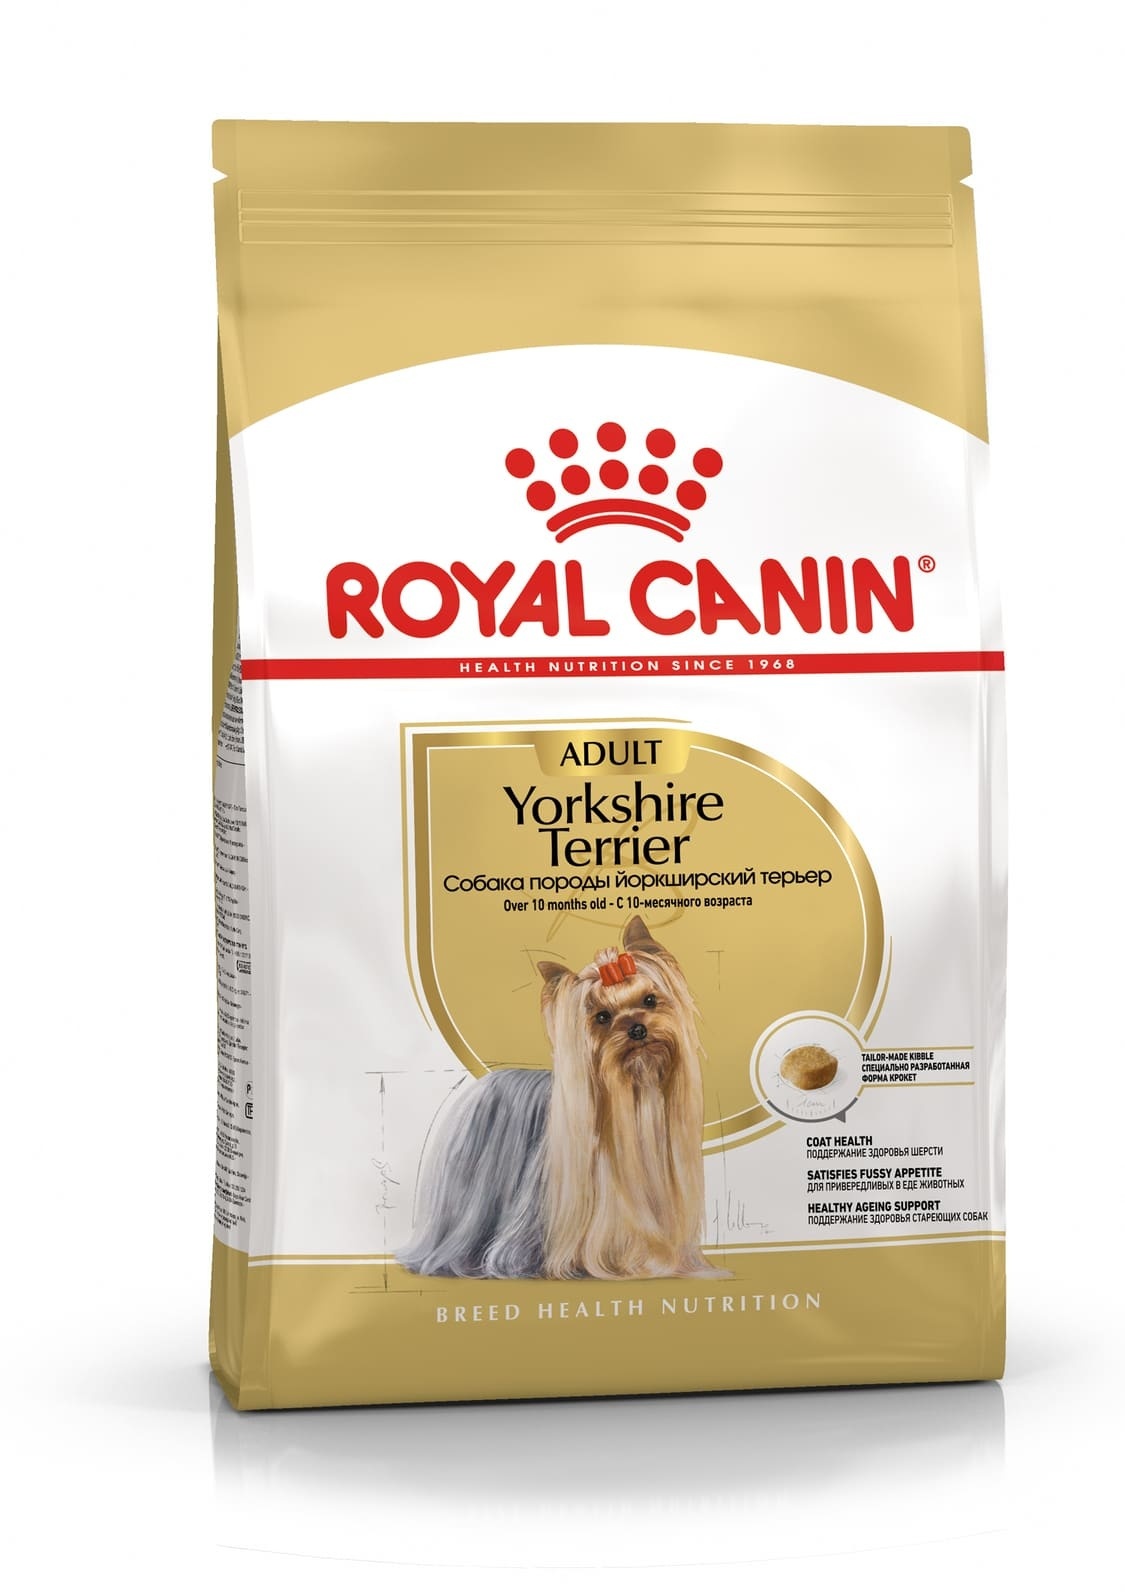 Royal Canin Корм Royal Canin корм для йоркширского терьера с 10 месяцев (500 г) цена